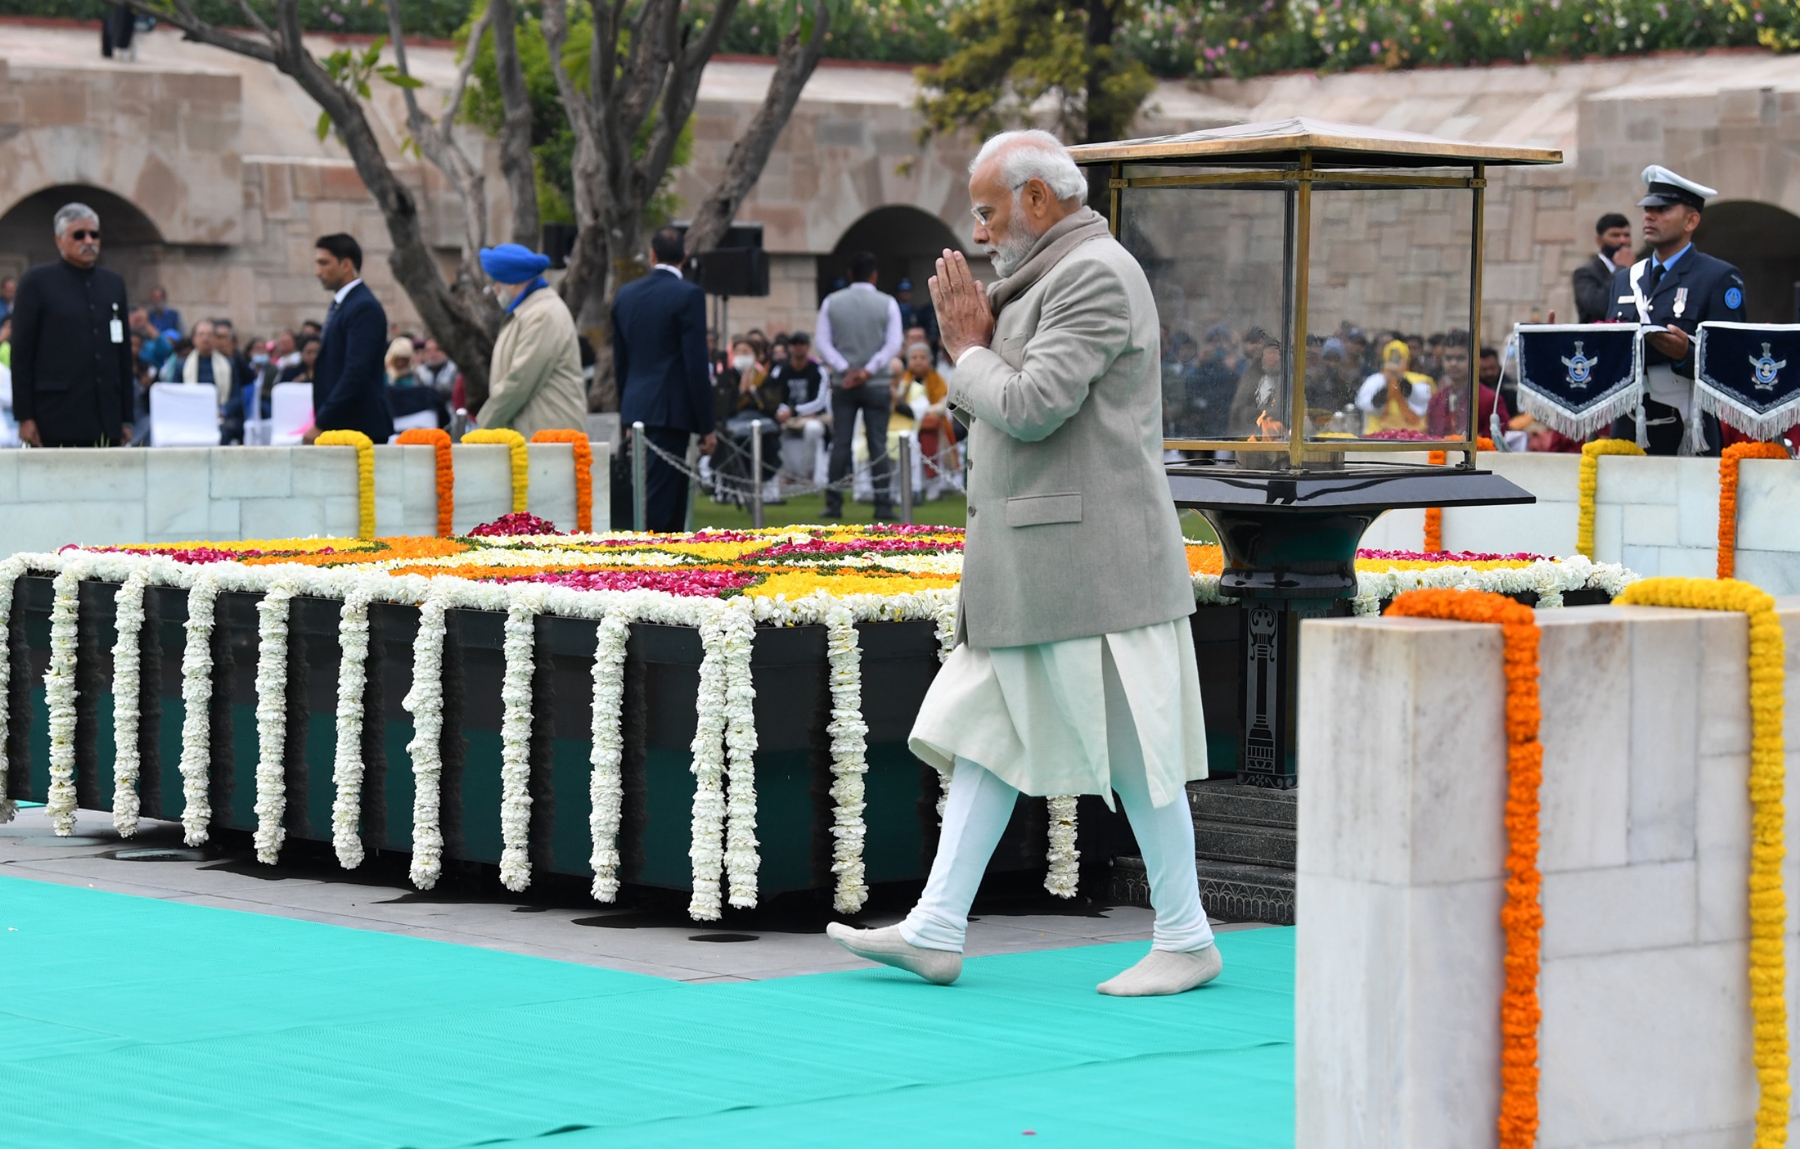 नई दिल्ली में समवार 30 जनवरी 2023 को प्रधानमंत्री नरेन्द्र मोदी ने शहीद दिवस के अवसर पर गांधी स्मृति में श्रद्धांजलि अर्पित के बाद परिक्रमा करते हुए। हिन्दुस्थान समाचार/ फोटो गणेश बिष्ट 